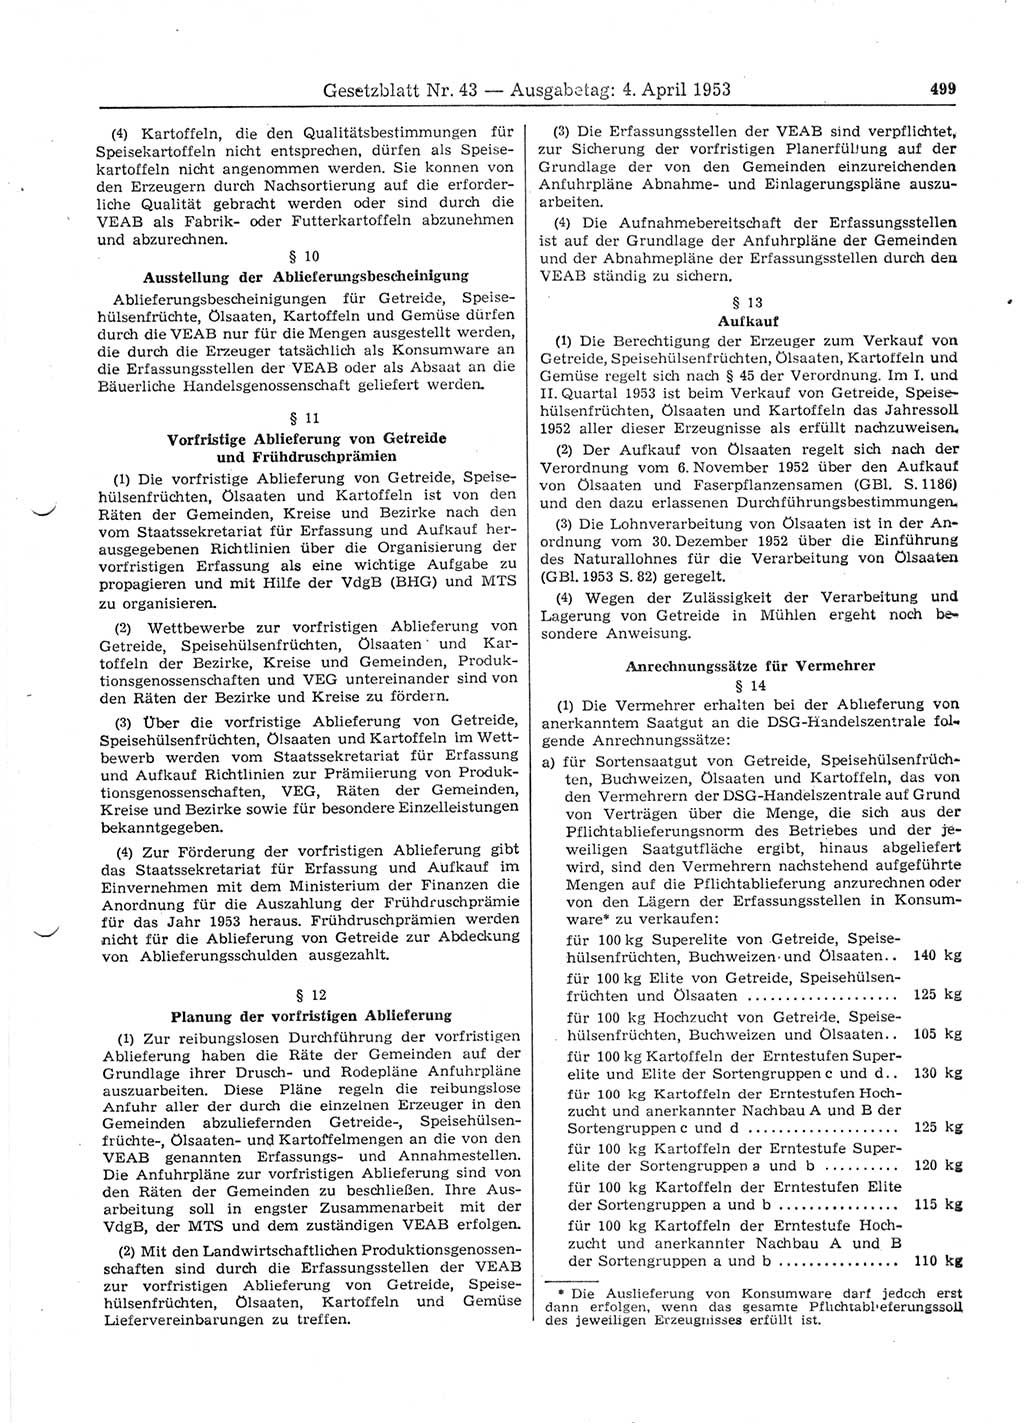 Gesetzblatt (GBl.) der Deutschen Demokratischen Republik (DDR) 1953, Seite 499 (GBl. DDR 1953, S. 499)